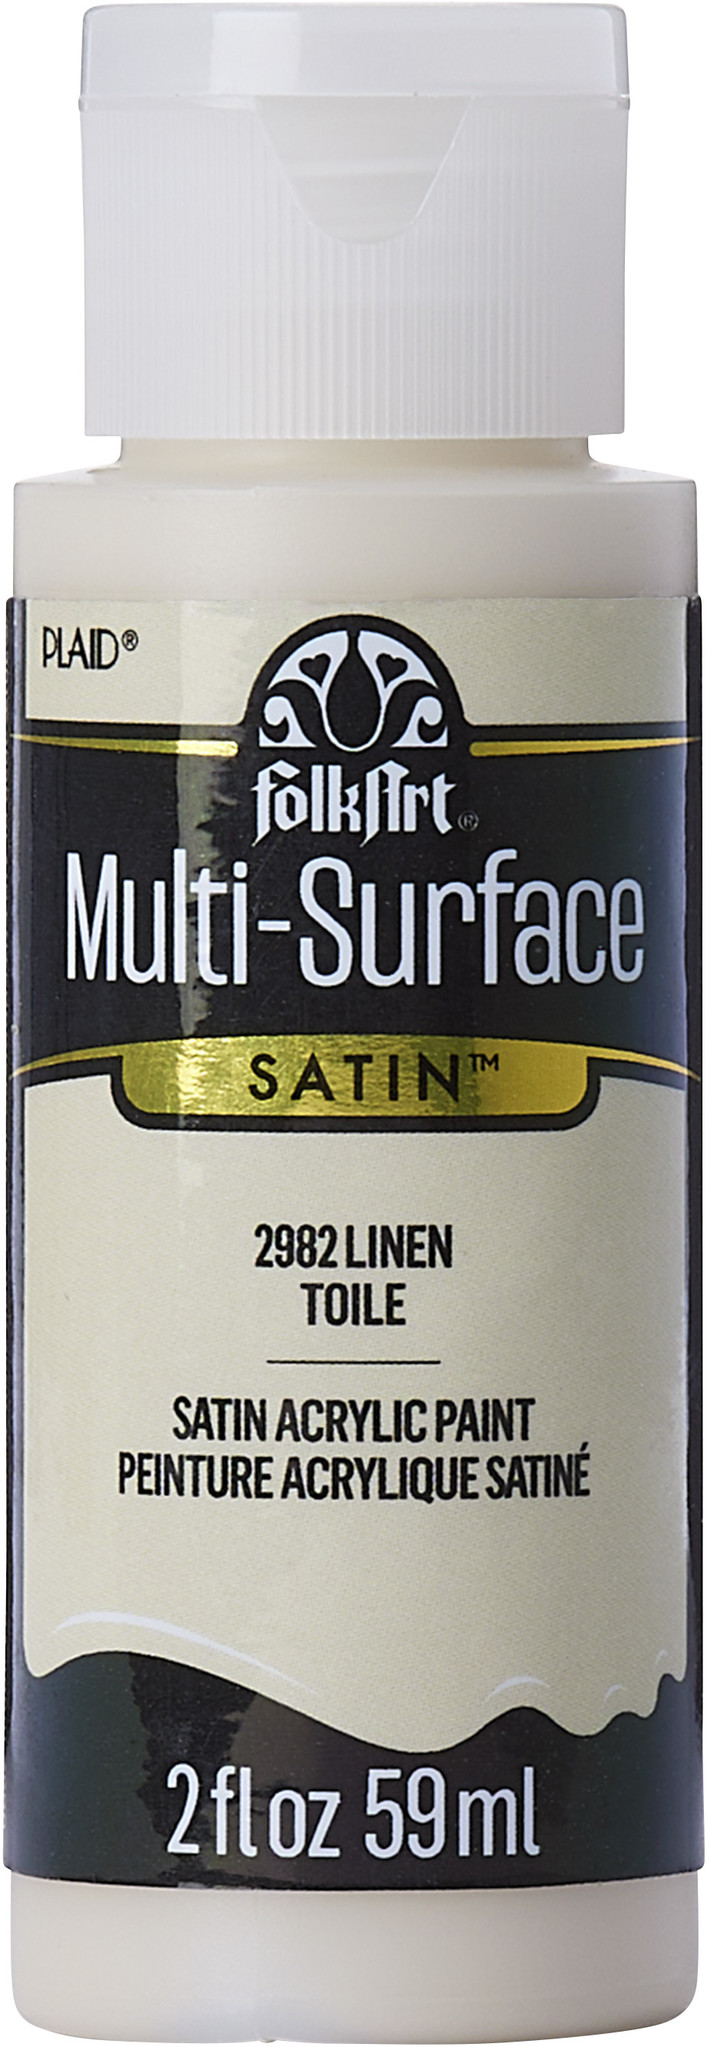 Multi-Surface Satin Linen 2 fl oz (2982) - Craftlines B.V.